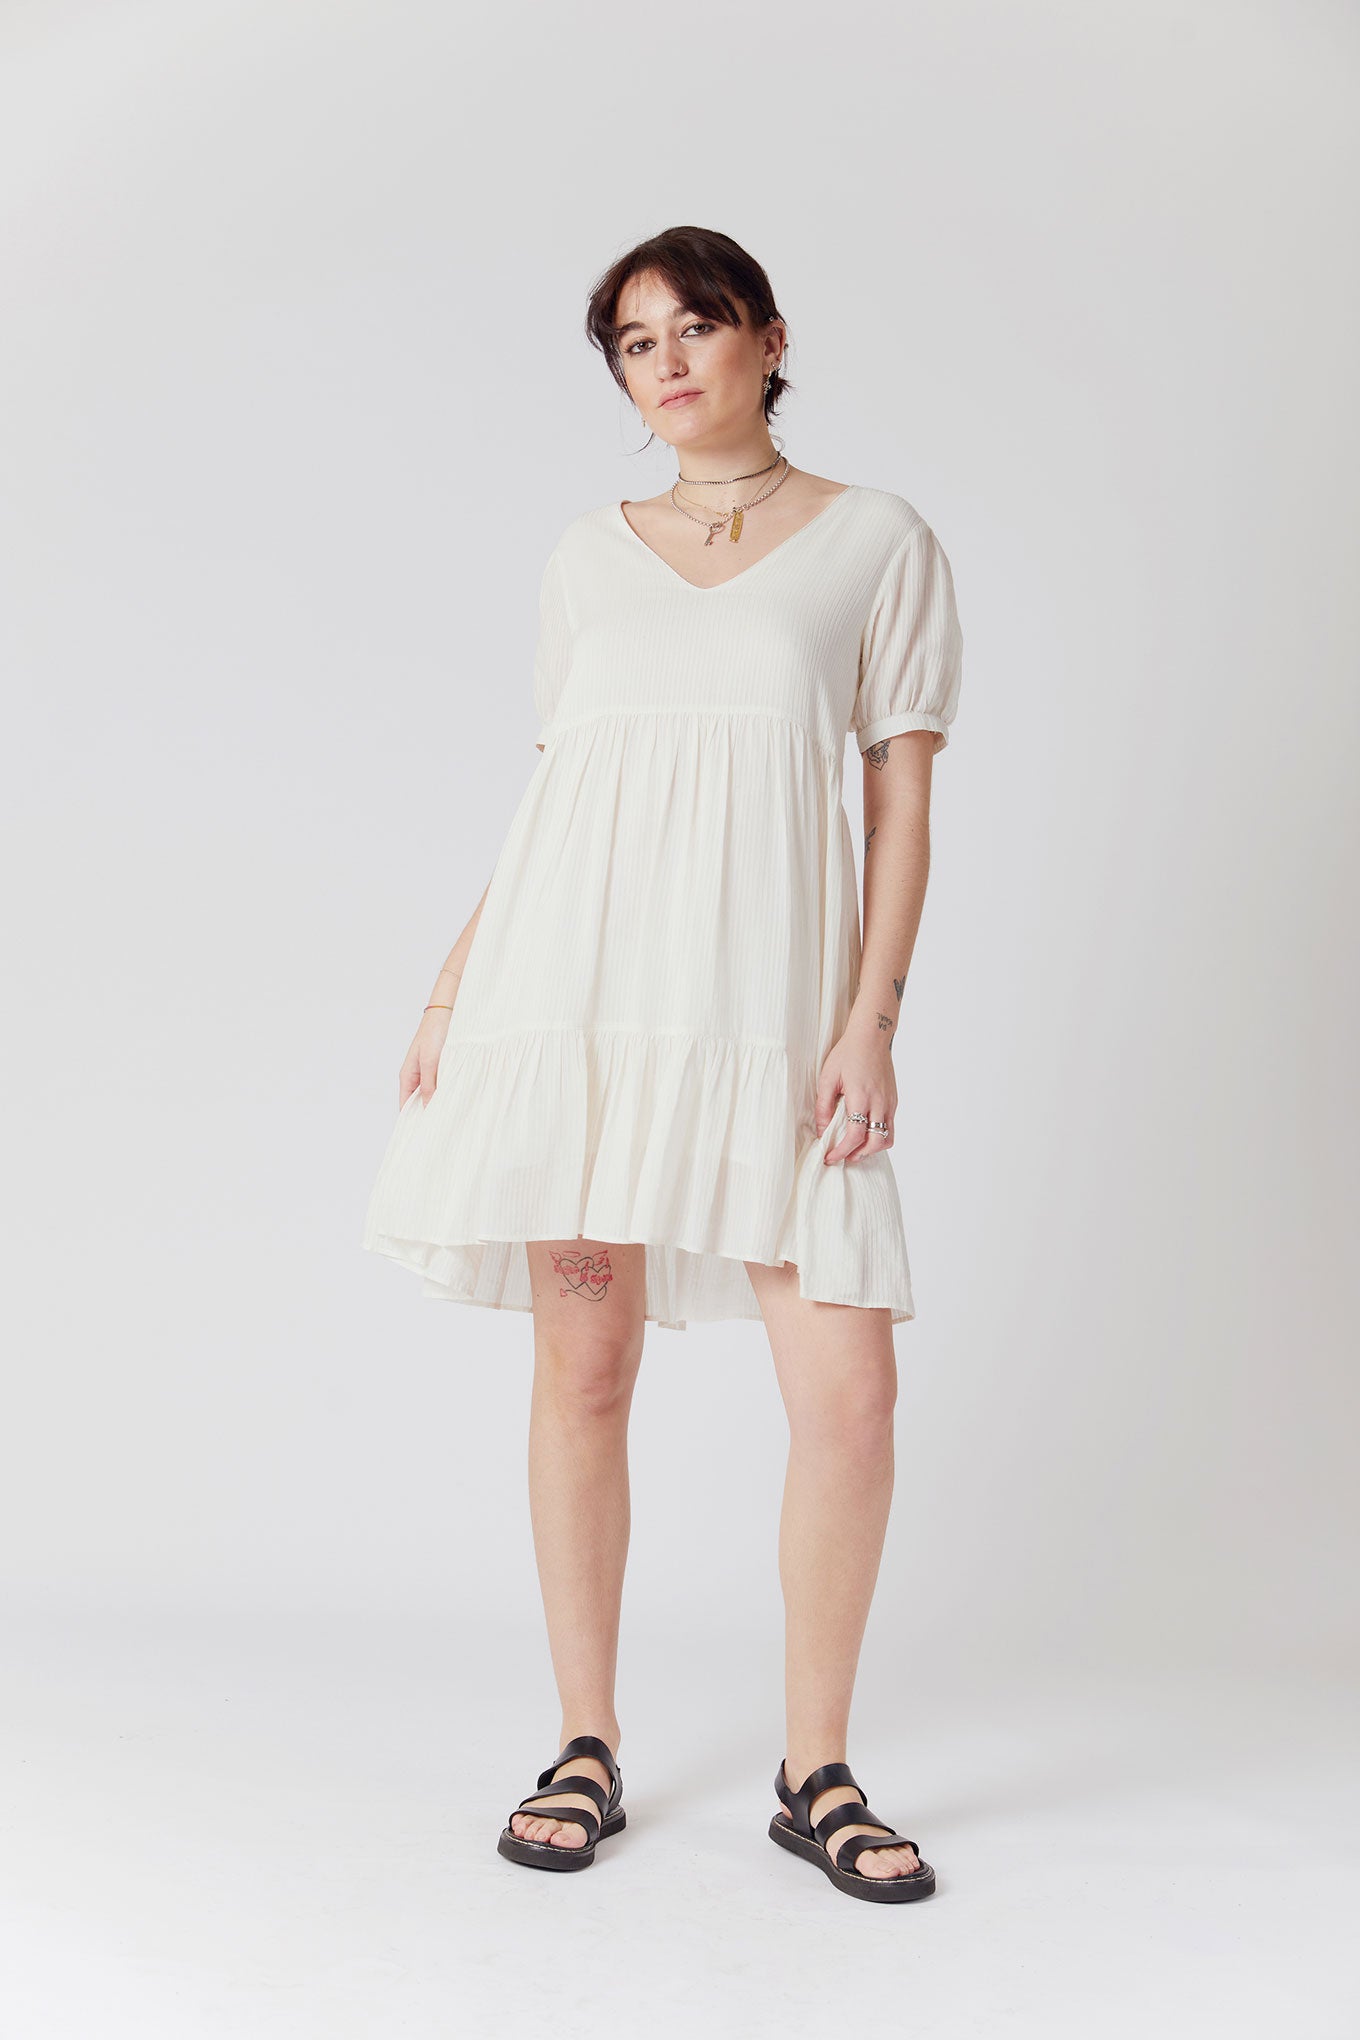 SKY Corn Fabric Mini Dress - Off White, SIZE 2 / UK 10 / EUR 38